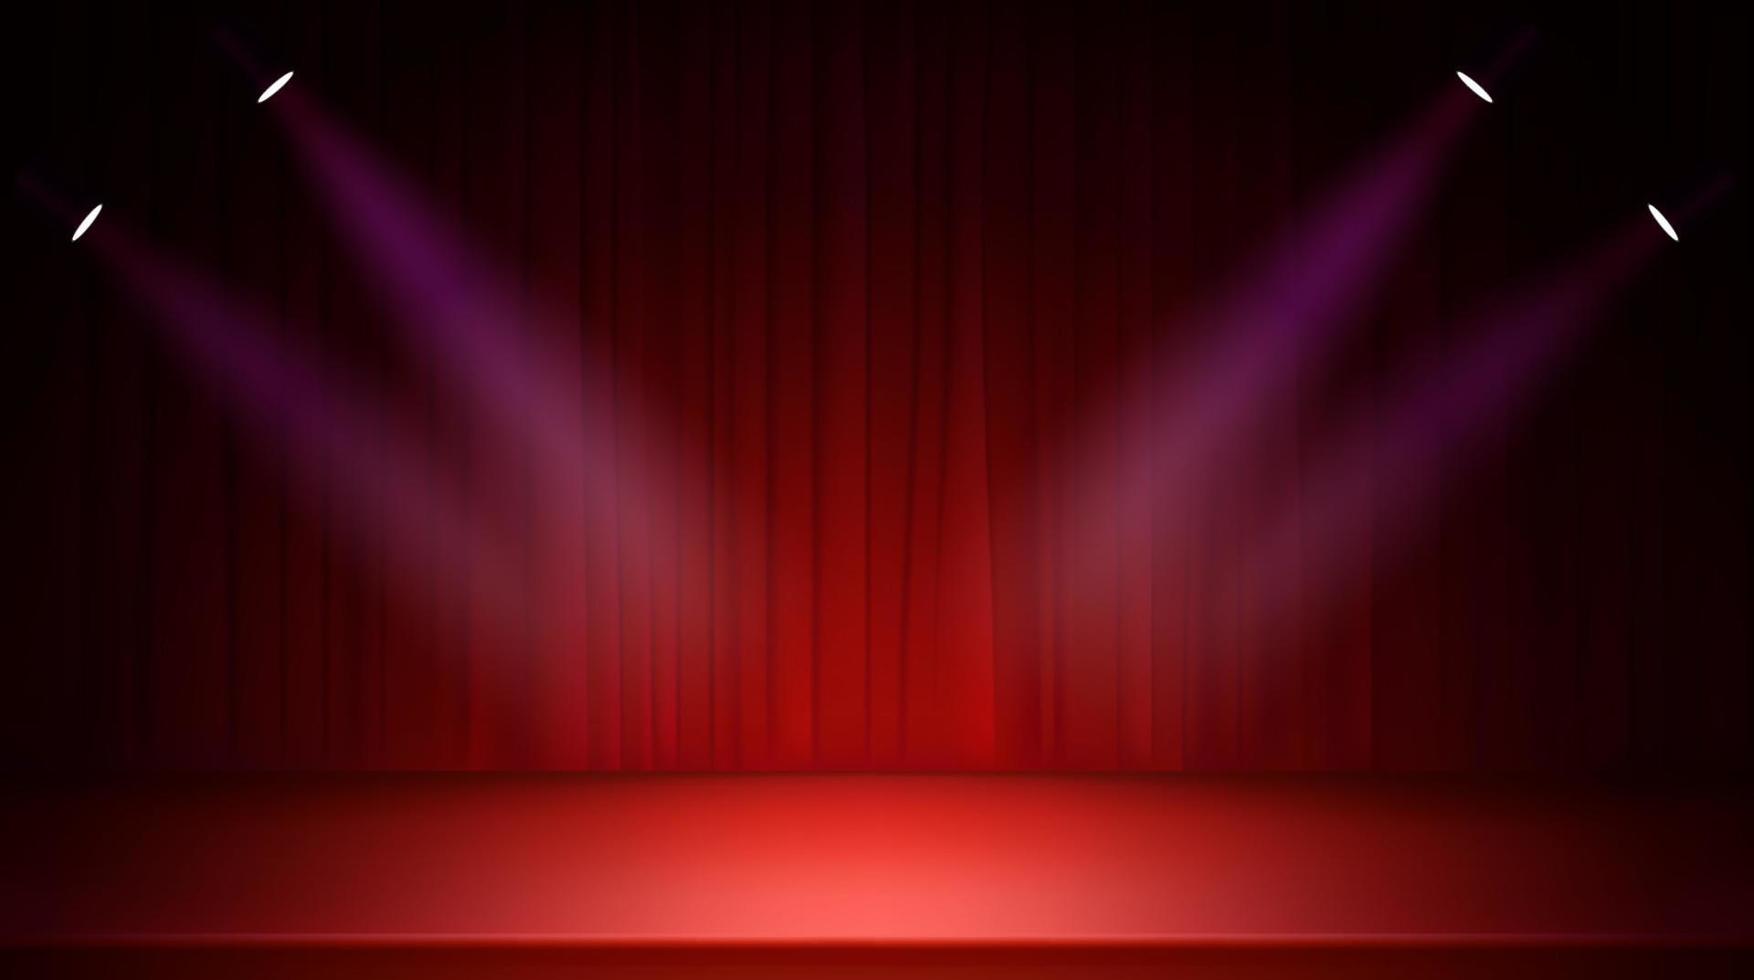 Escenario luminoso con cortinas rojas y focos. Ilustración de vector realista de estilo 3d